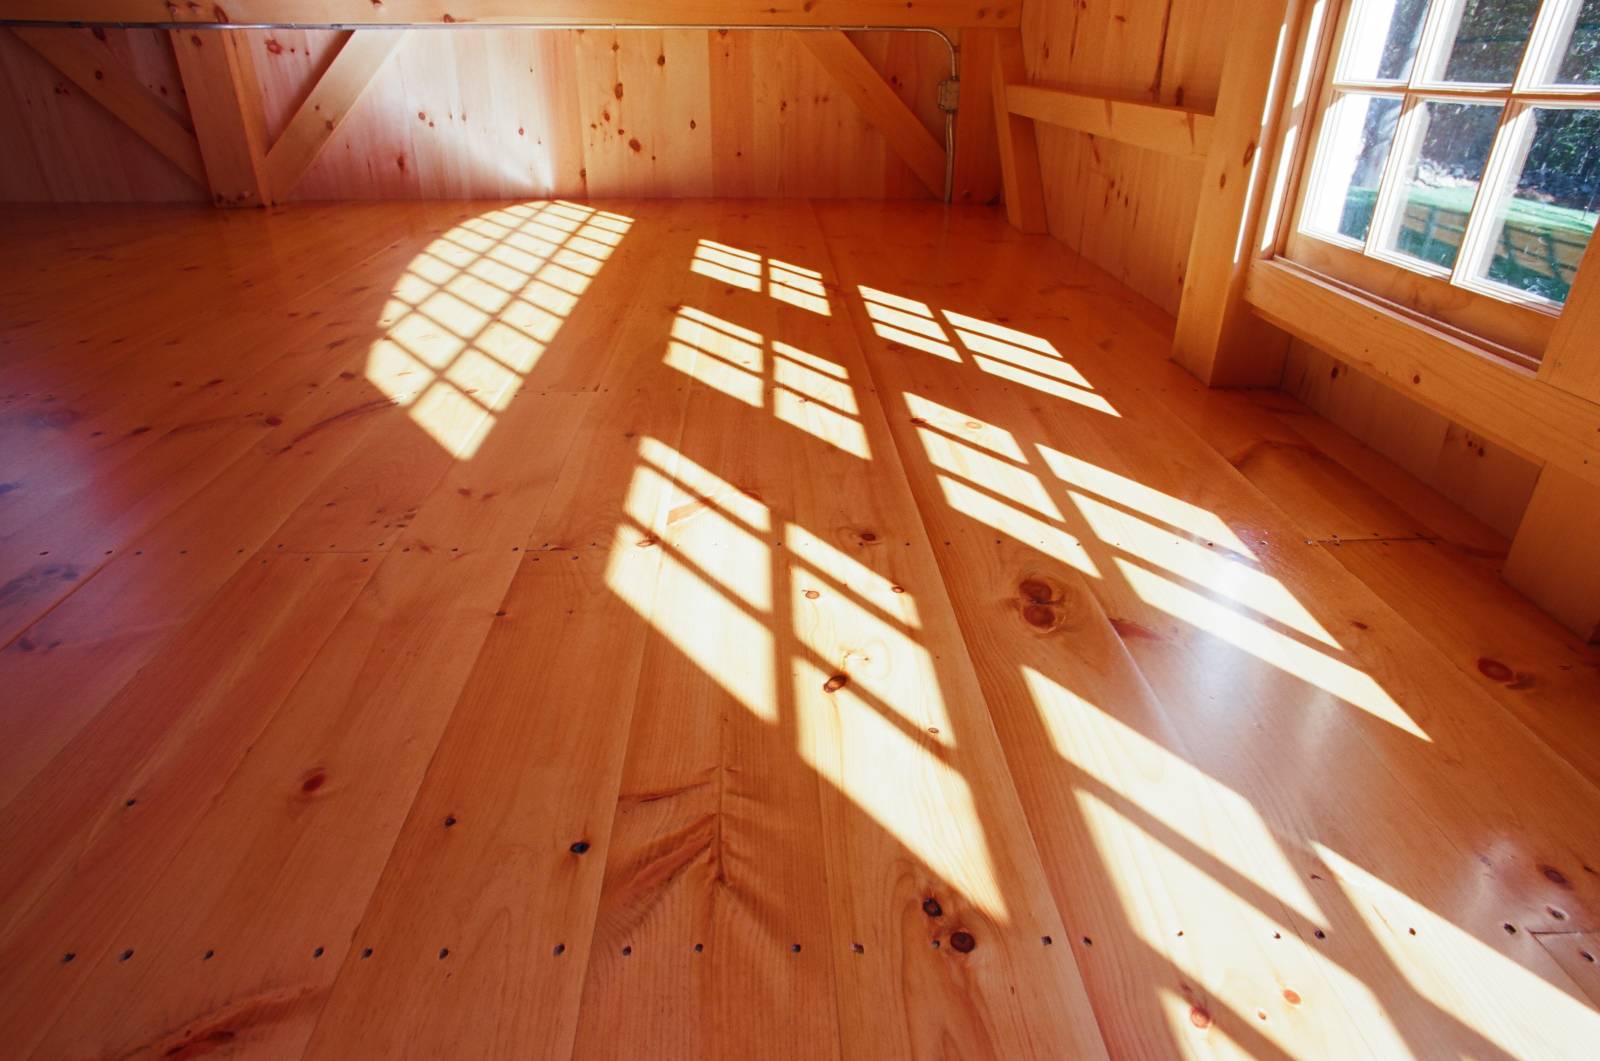 Shadows from true divided light barn windows